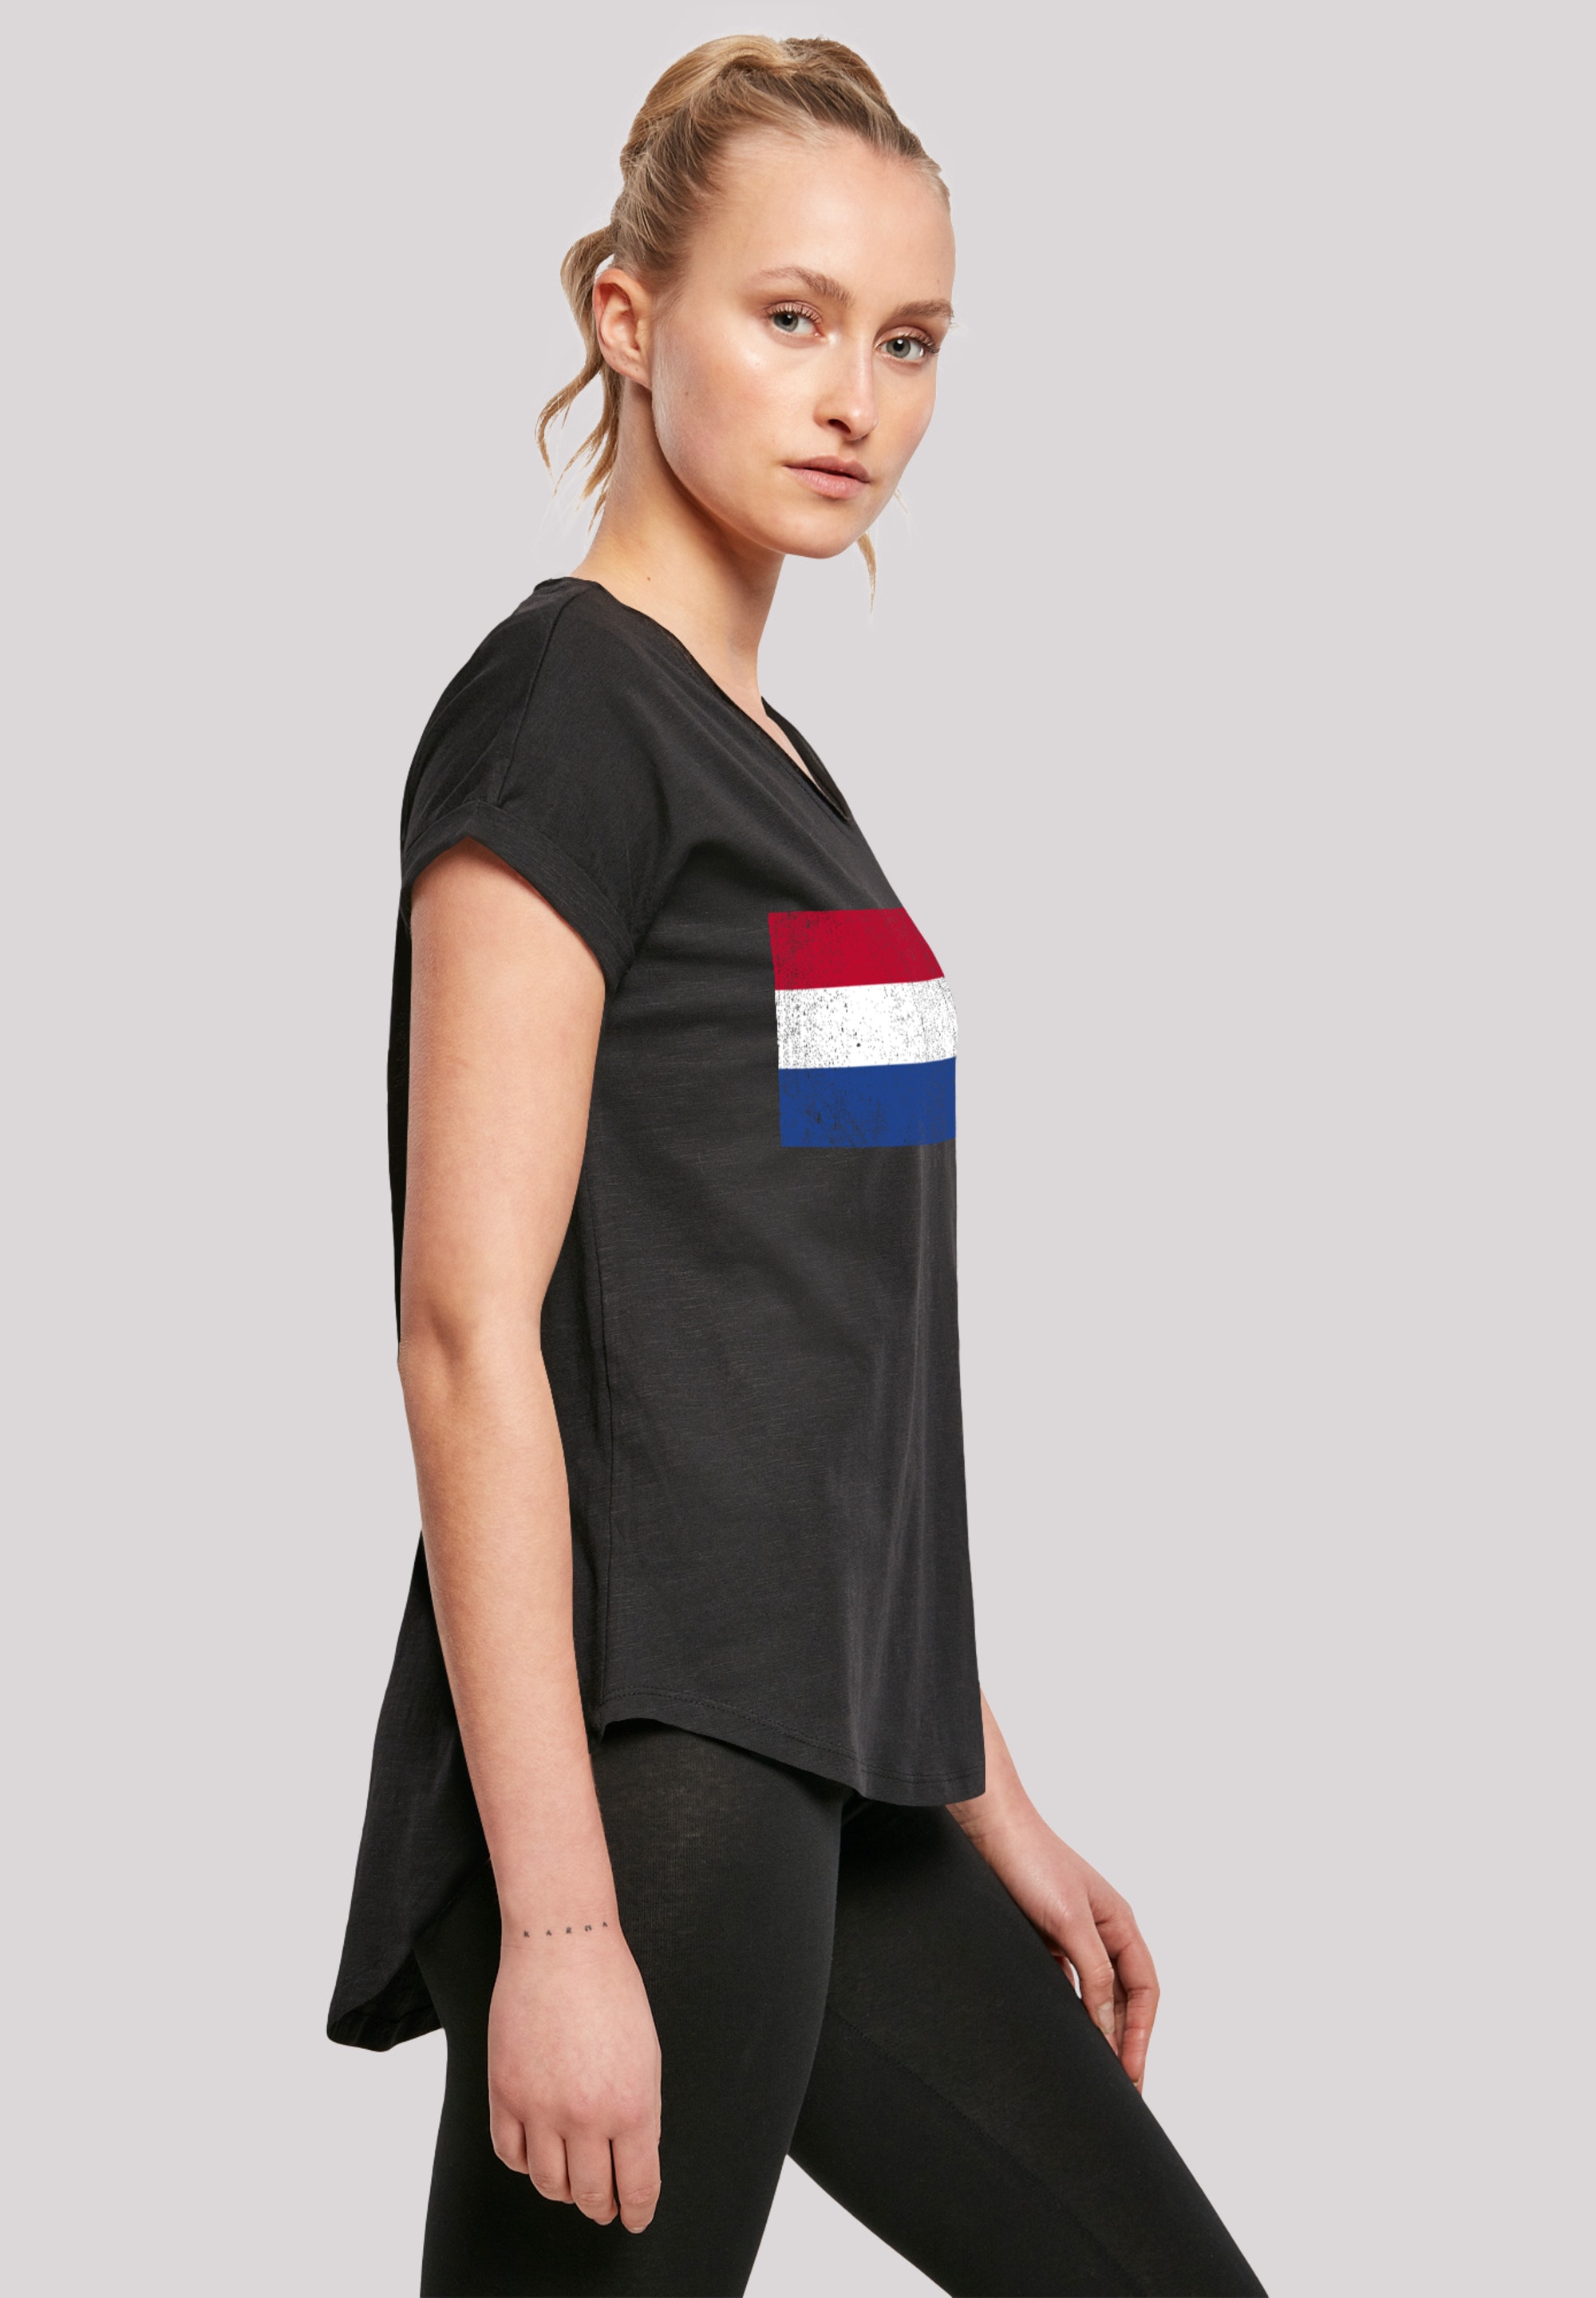 T-Shirt F4NT4STIC NIederlande distressed«, Print Holland shoppen Flagge »Netherlands